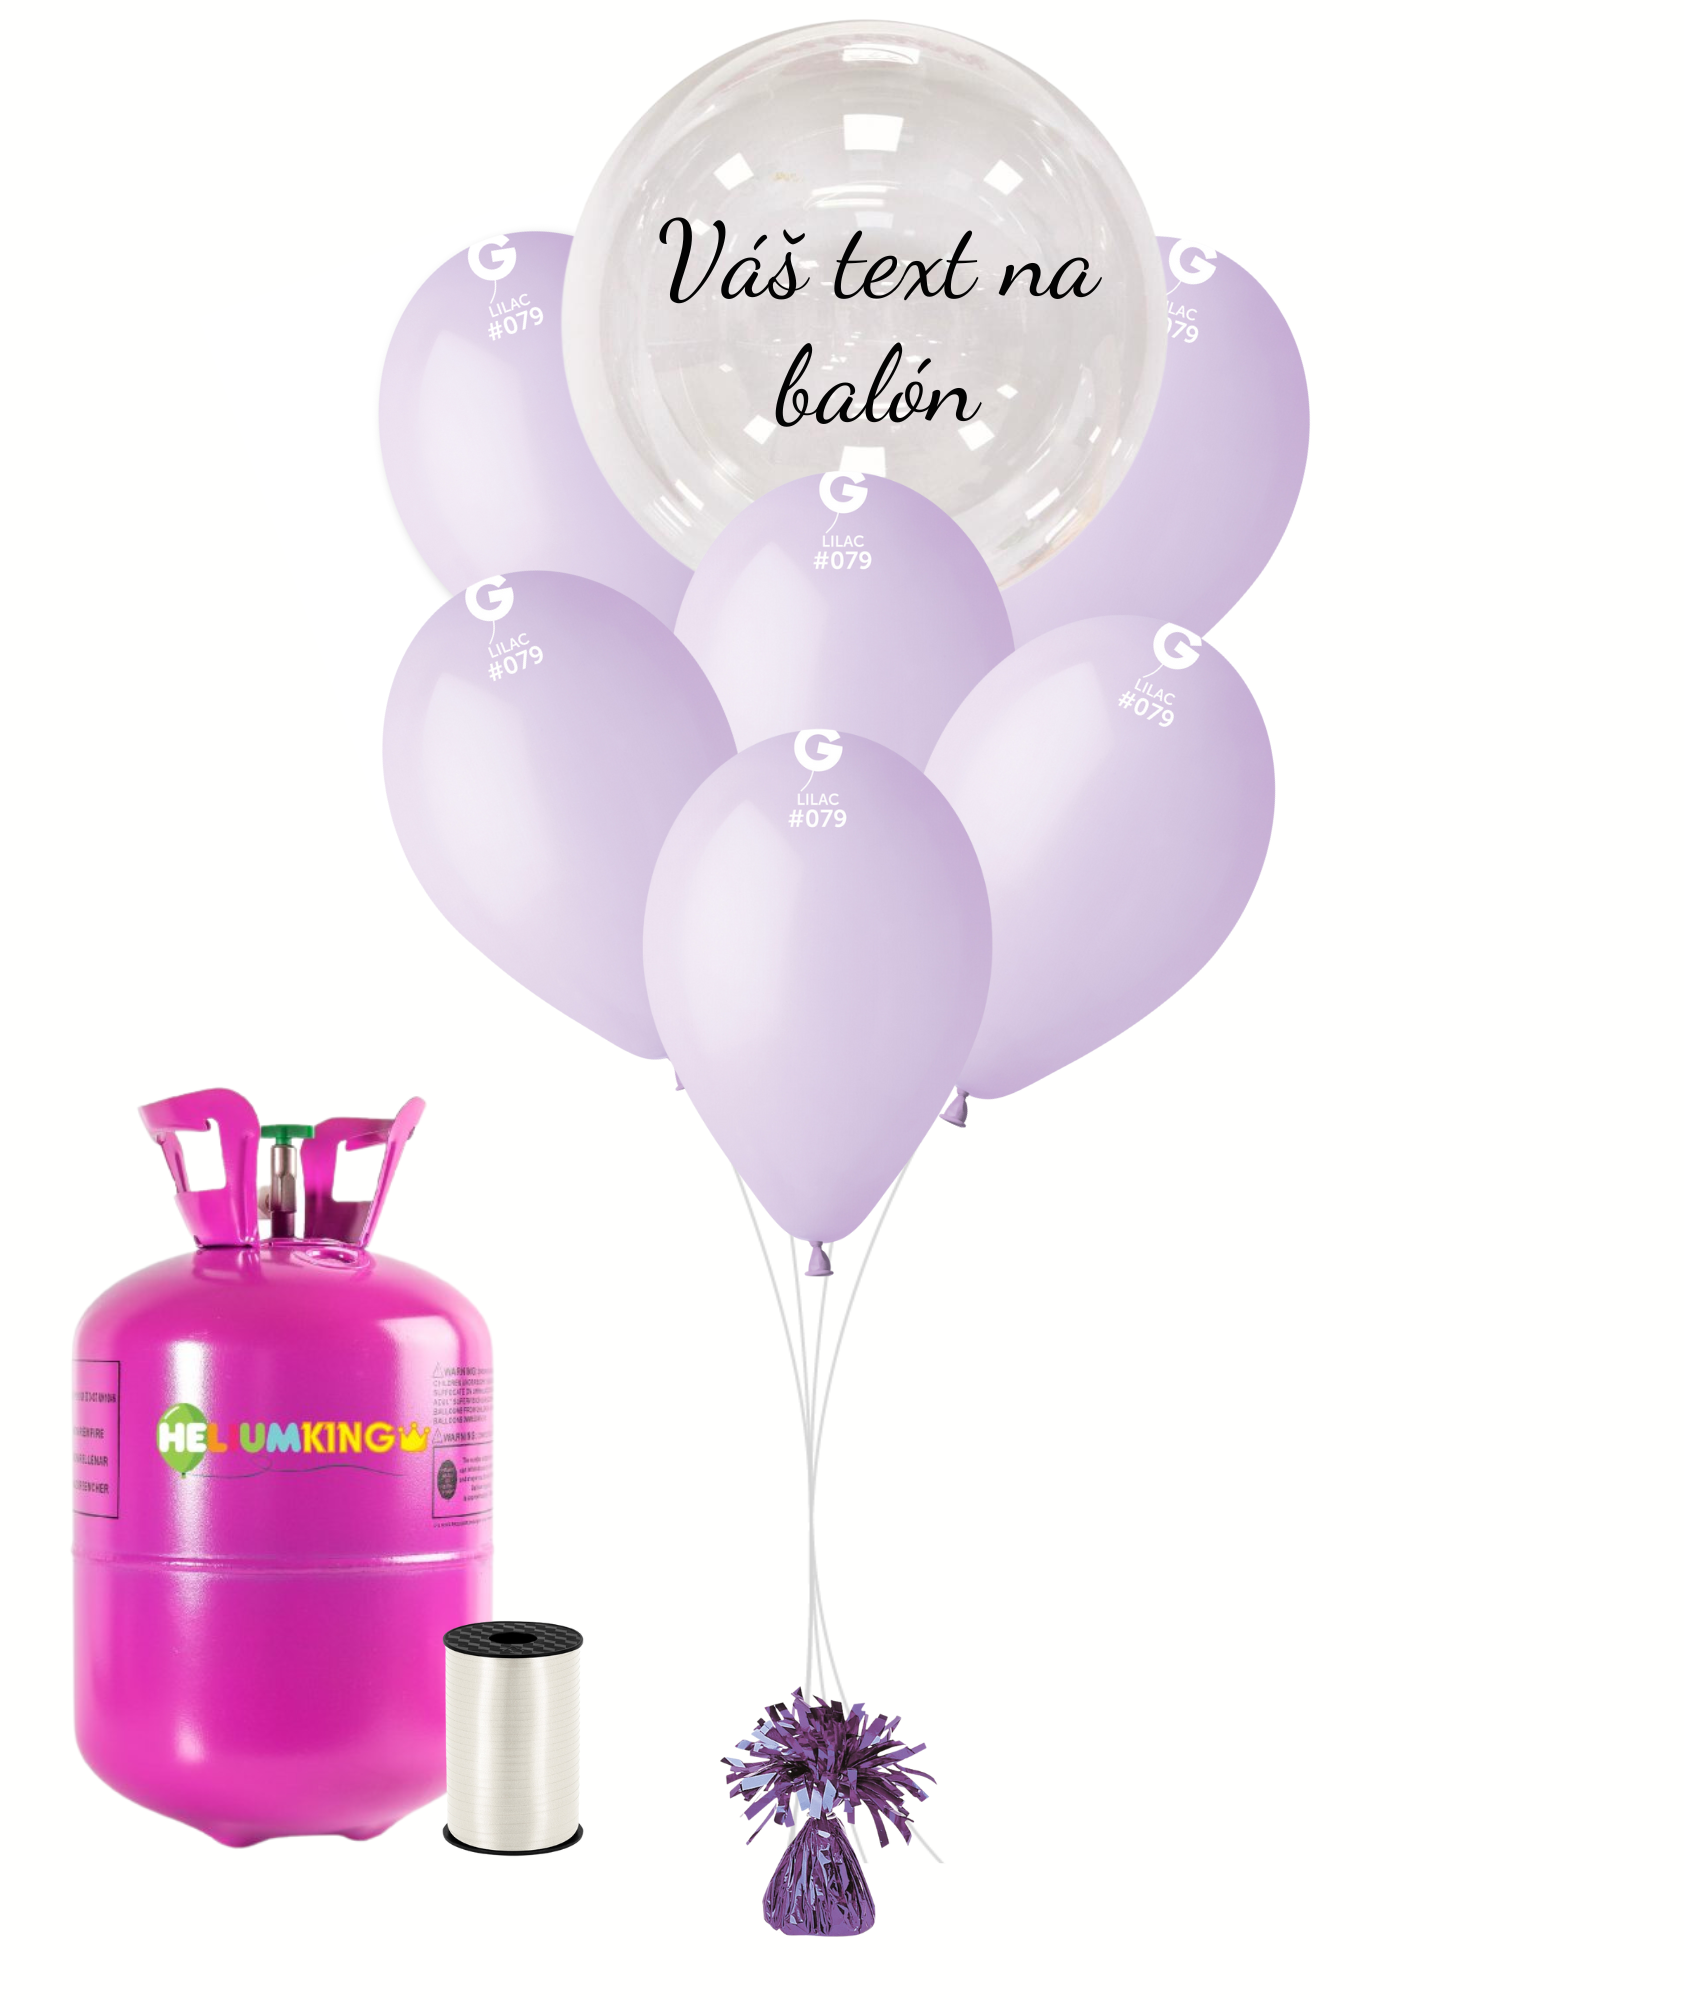 Personal Personalizovaný helium párty set fialový - Průsvitný balón 11 ks